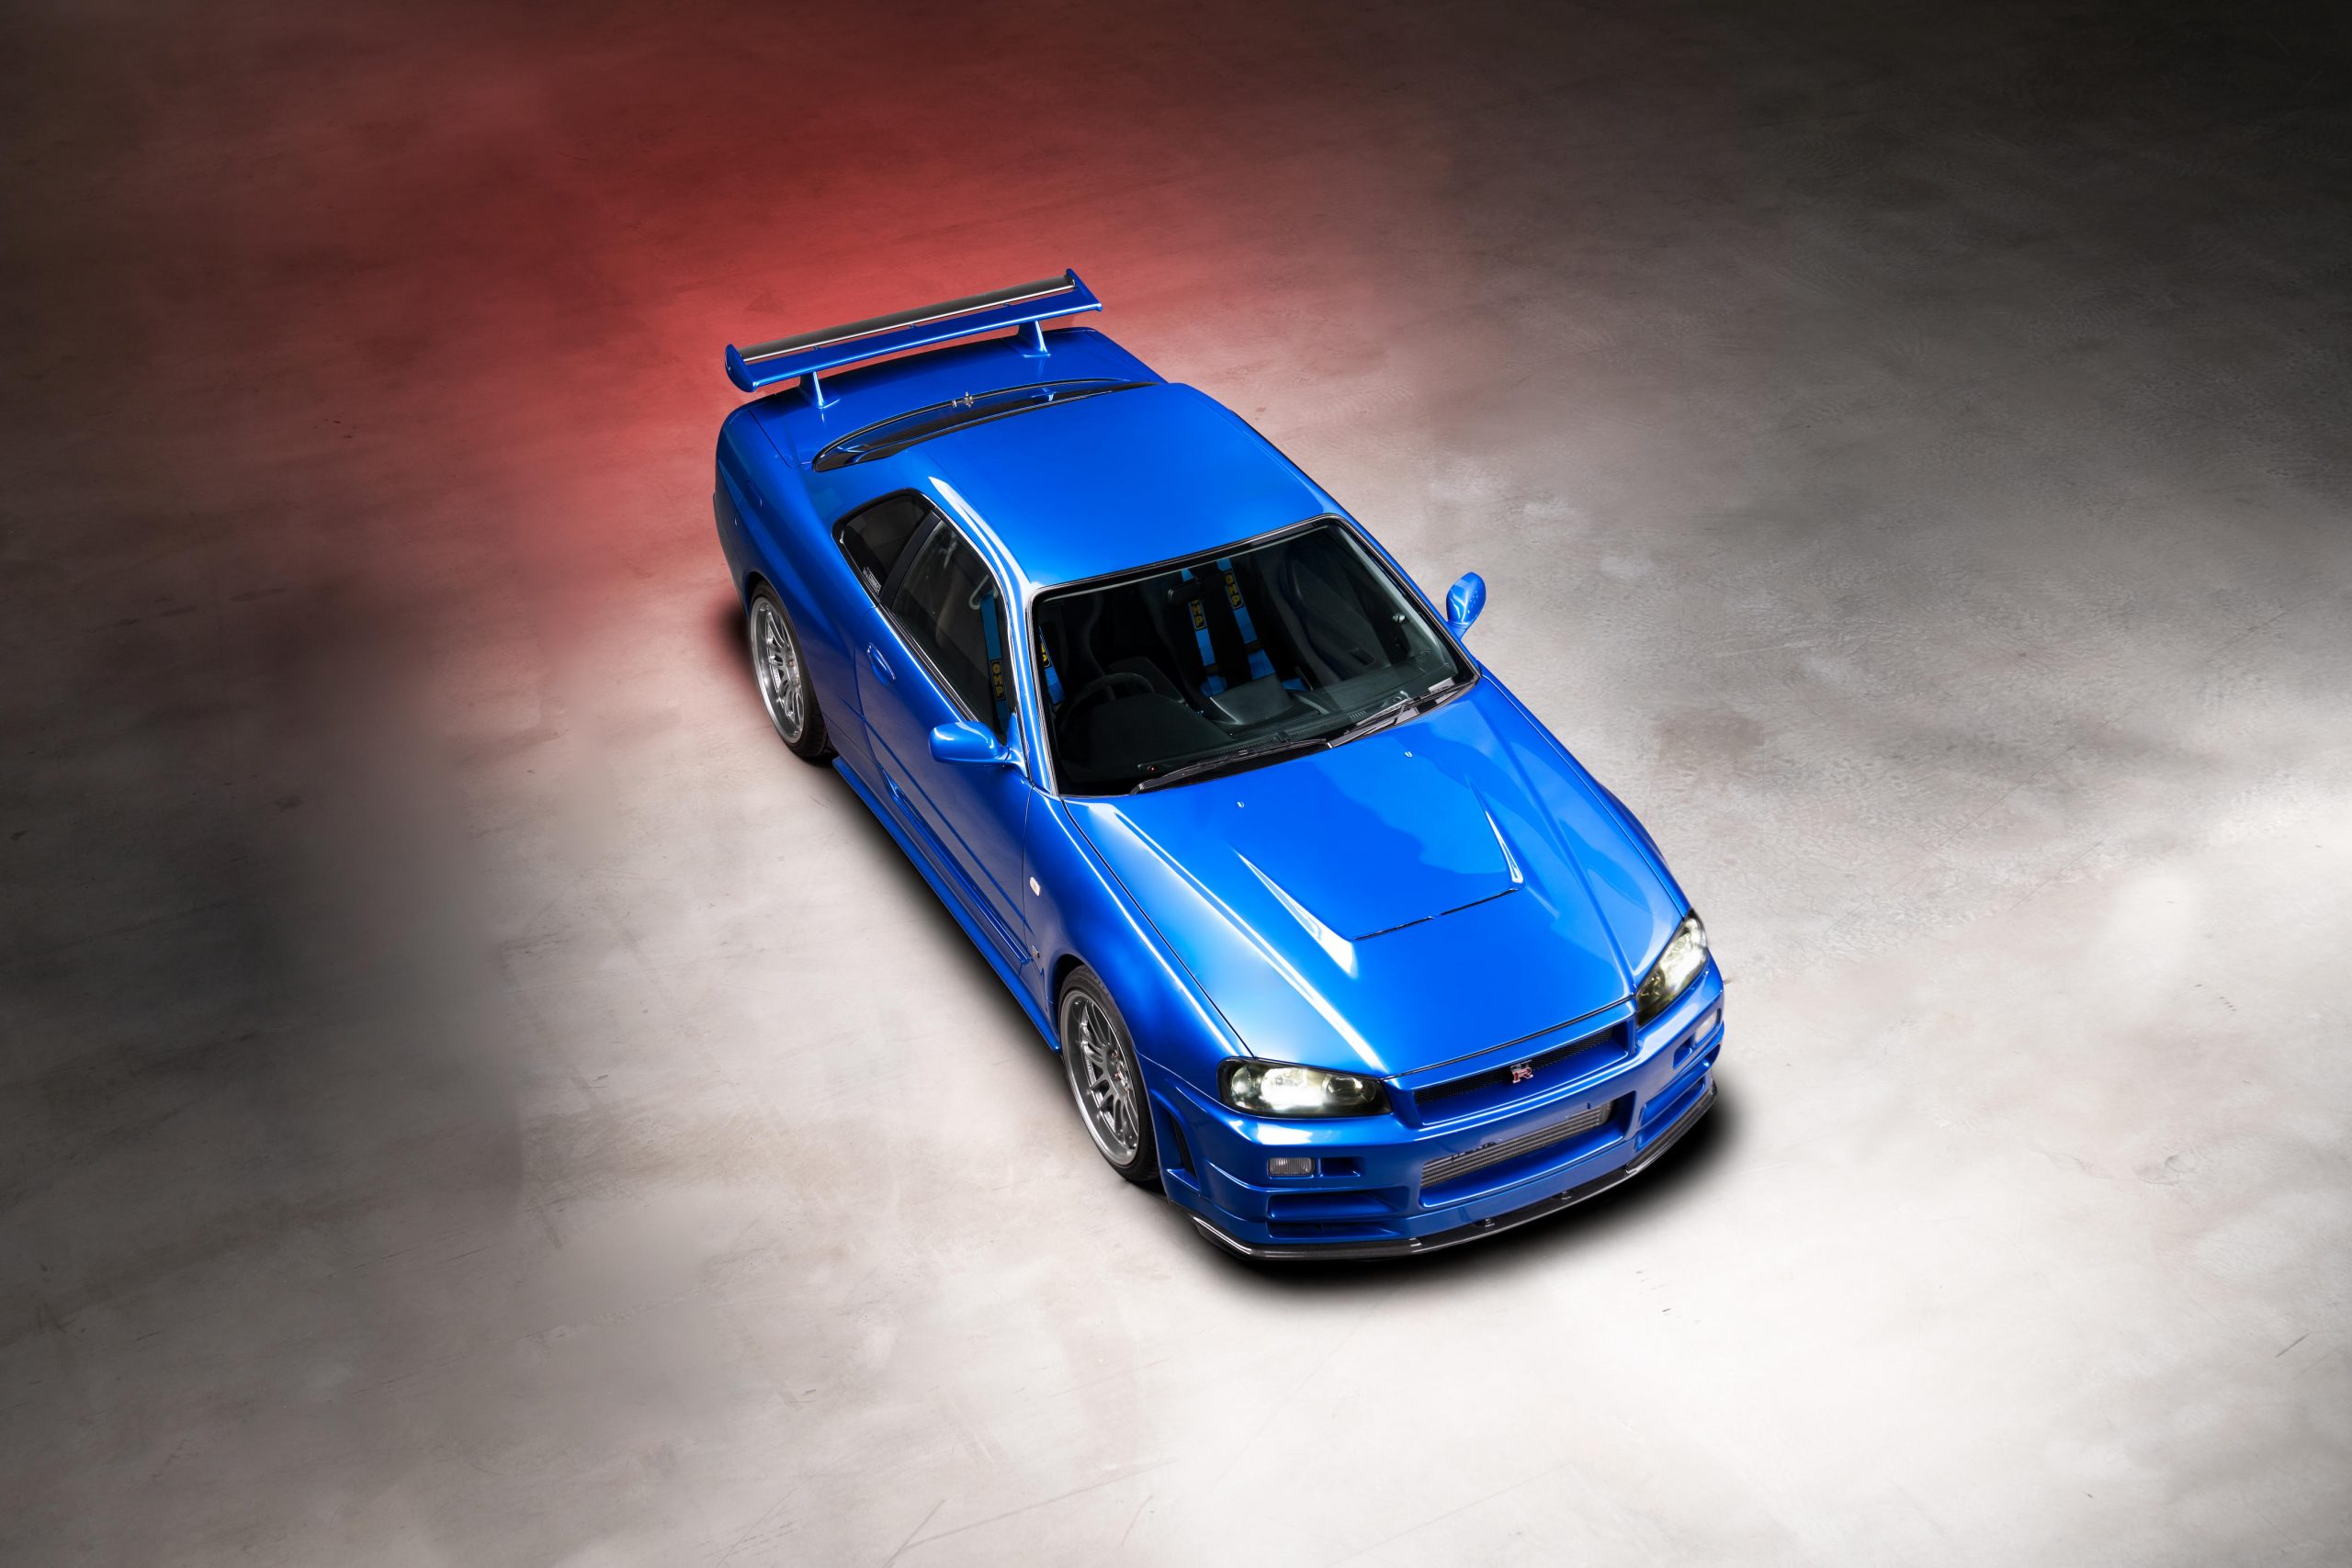 imagen 3 de Sale a subasta en Nissan conducido por Paul Walker en Fast & Furious.